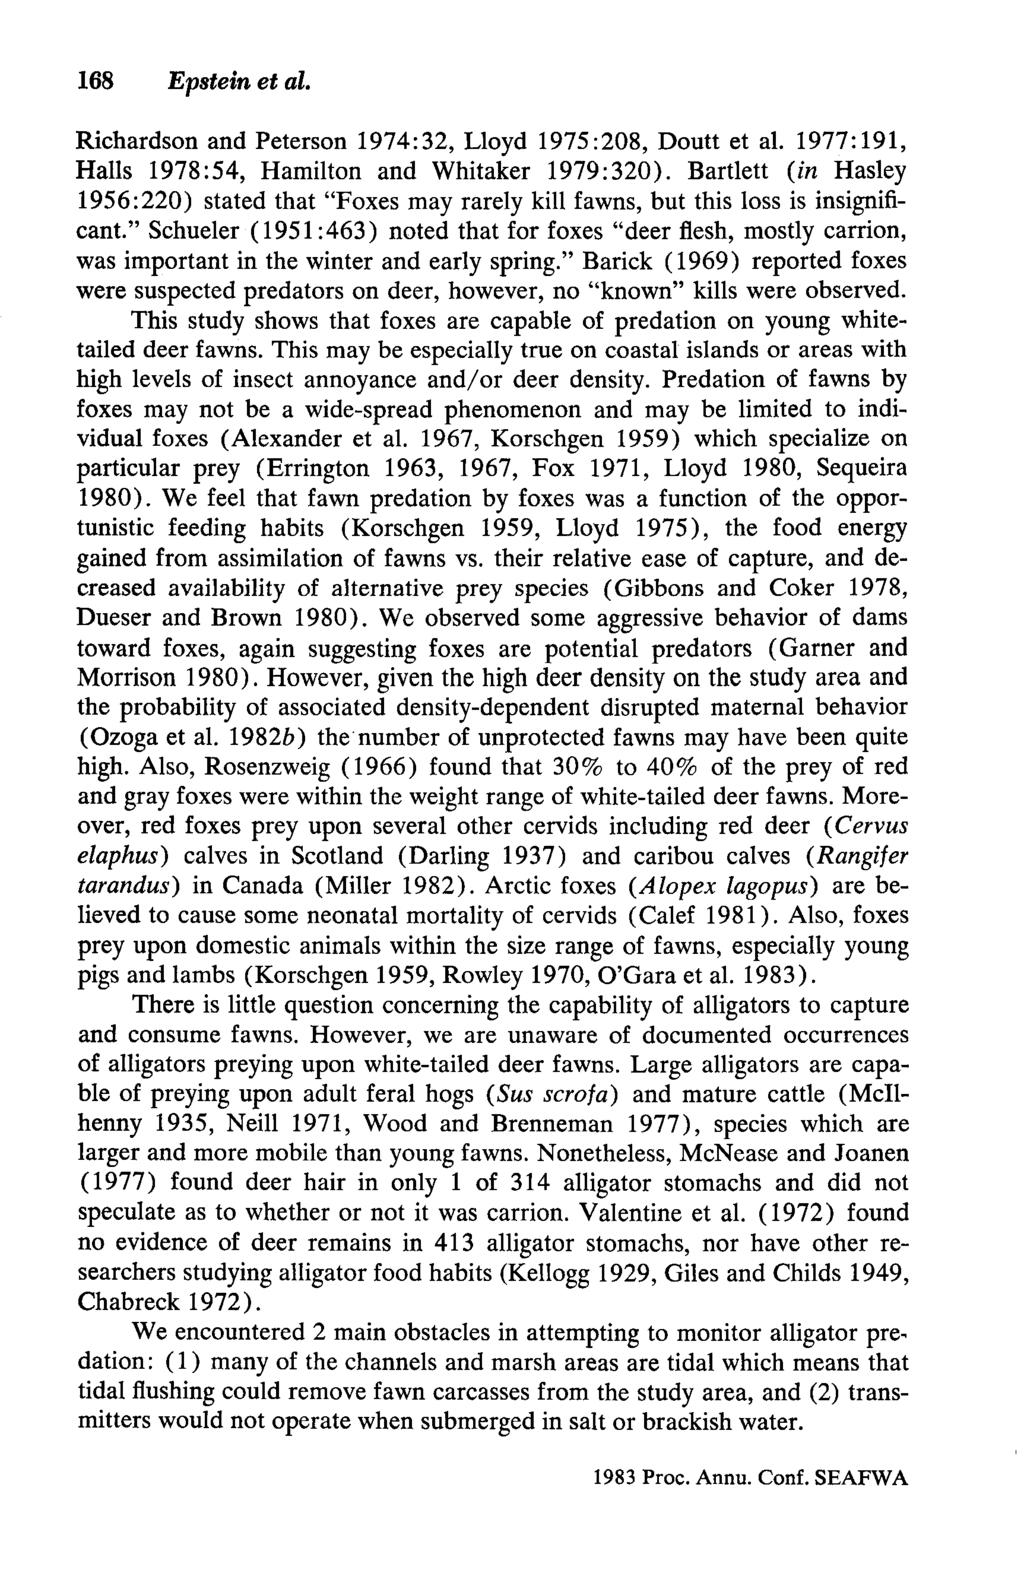 168 Epstein et al. Richardson and Peterson 1974:32, Lloyd 1975:208, Doutt et al. 1977:191, Halls 1978:54, Hamilton and Whitaker 1979:320).